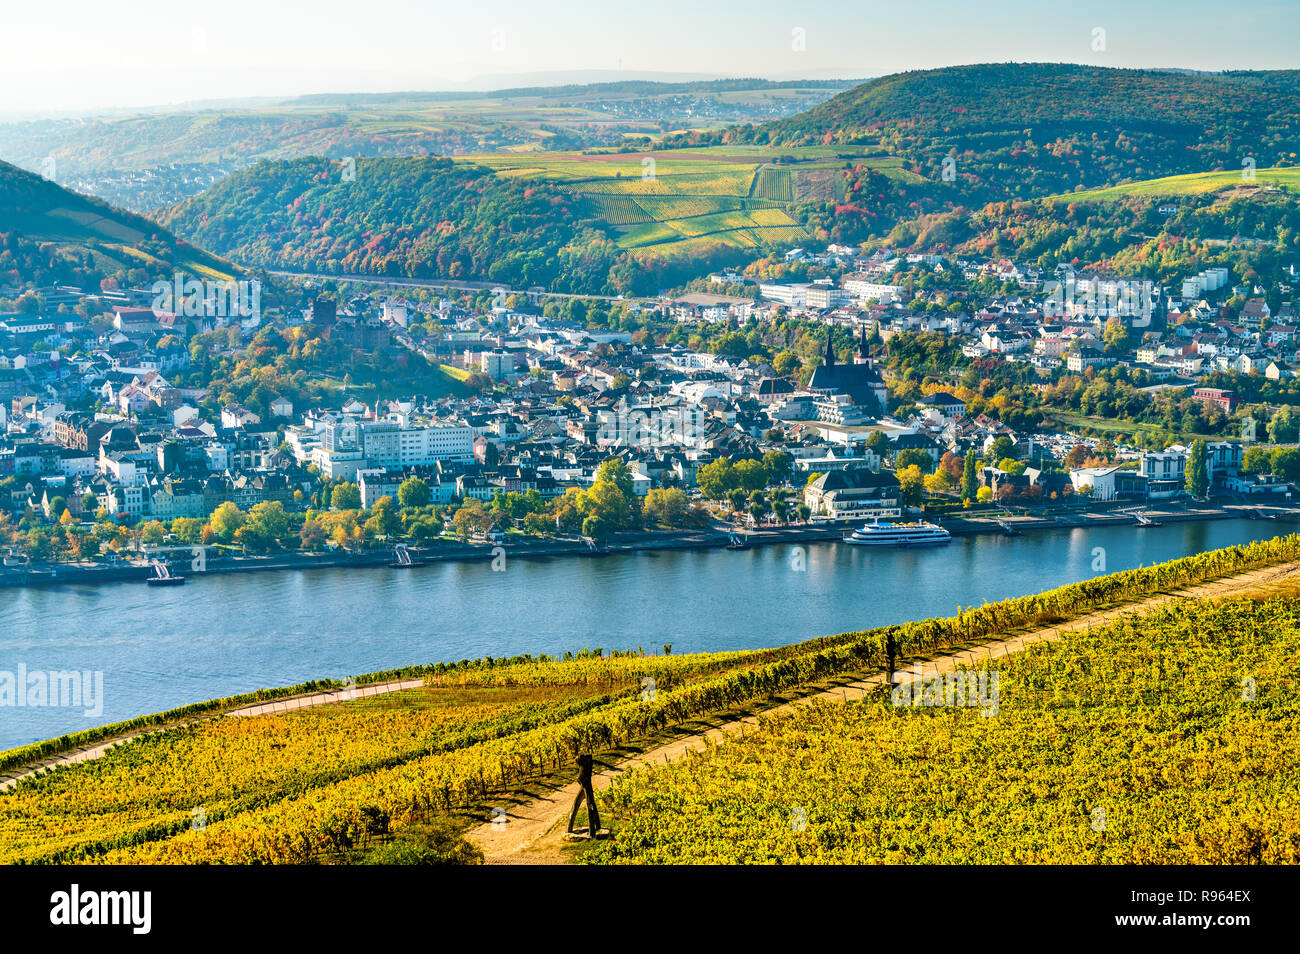 Avis de Bingen am Rhein du Rudesheim vignobles dans la vallée du Rhin, Allemagne Banque D'Images